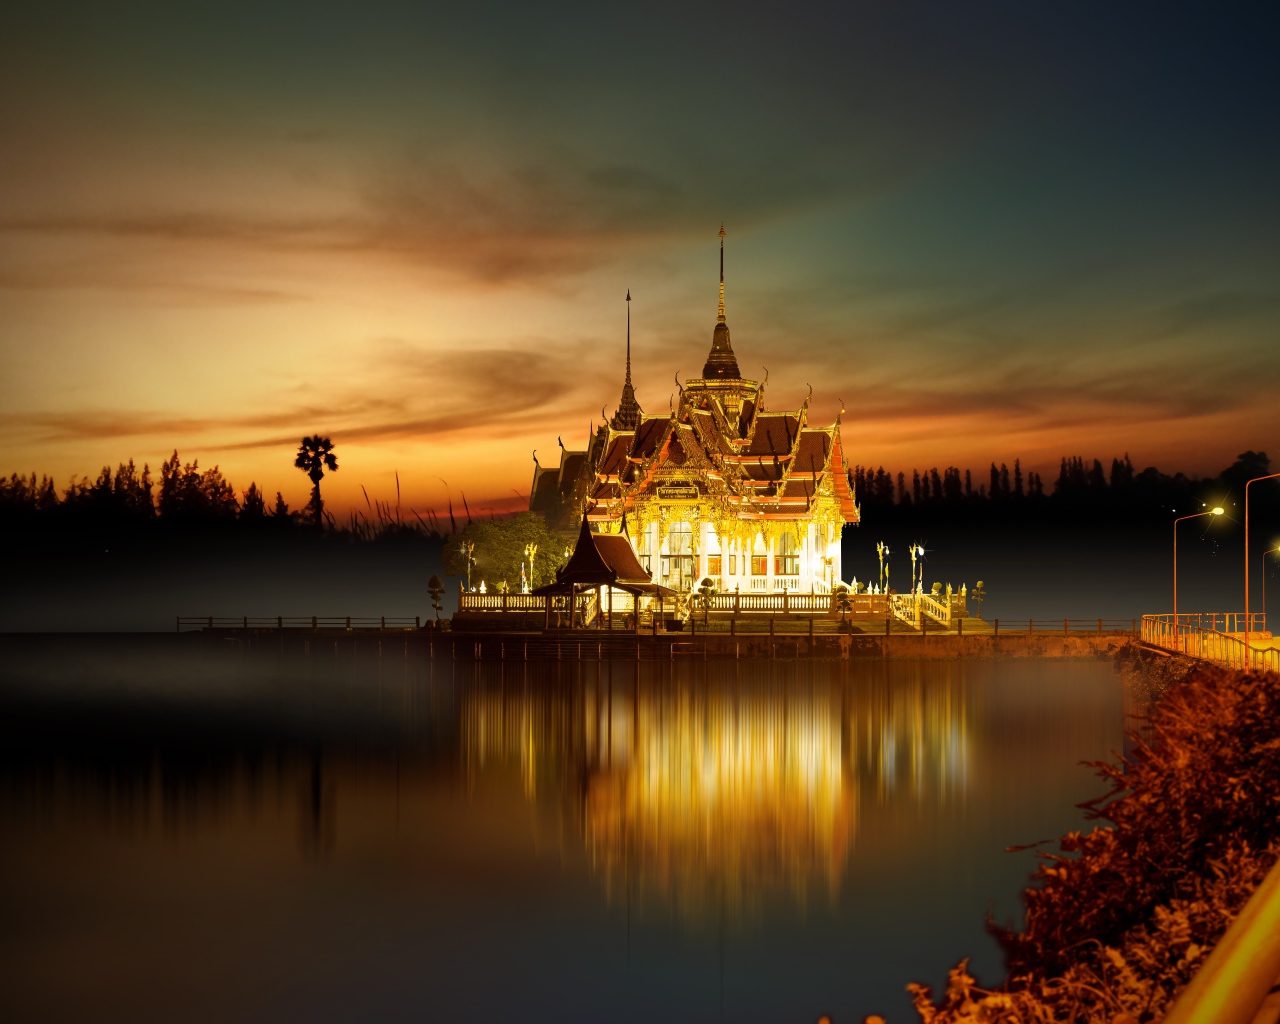 Буддийский храм у воды ночью, Азия